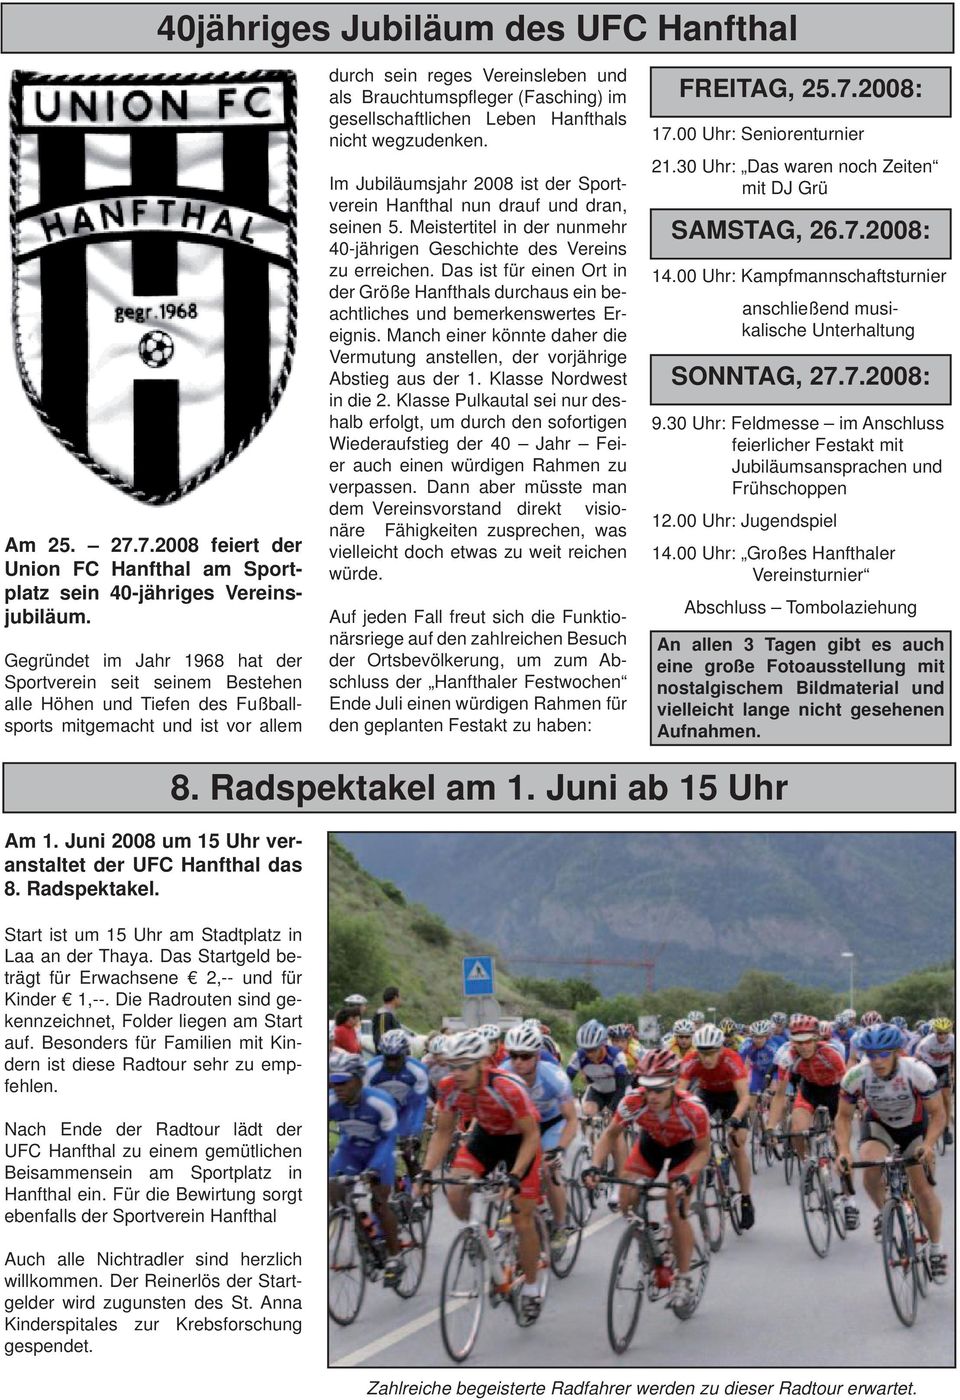 im gesellschaftlichen Leben Hanfthals nicht wegzudenken. Im Jubiläumsjahr 2008 ist der Sportverein Hanfthal nun drauf und dran, seinen 5.